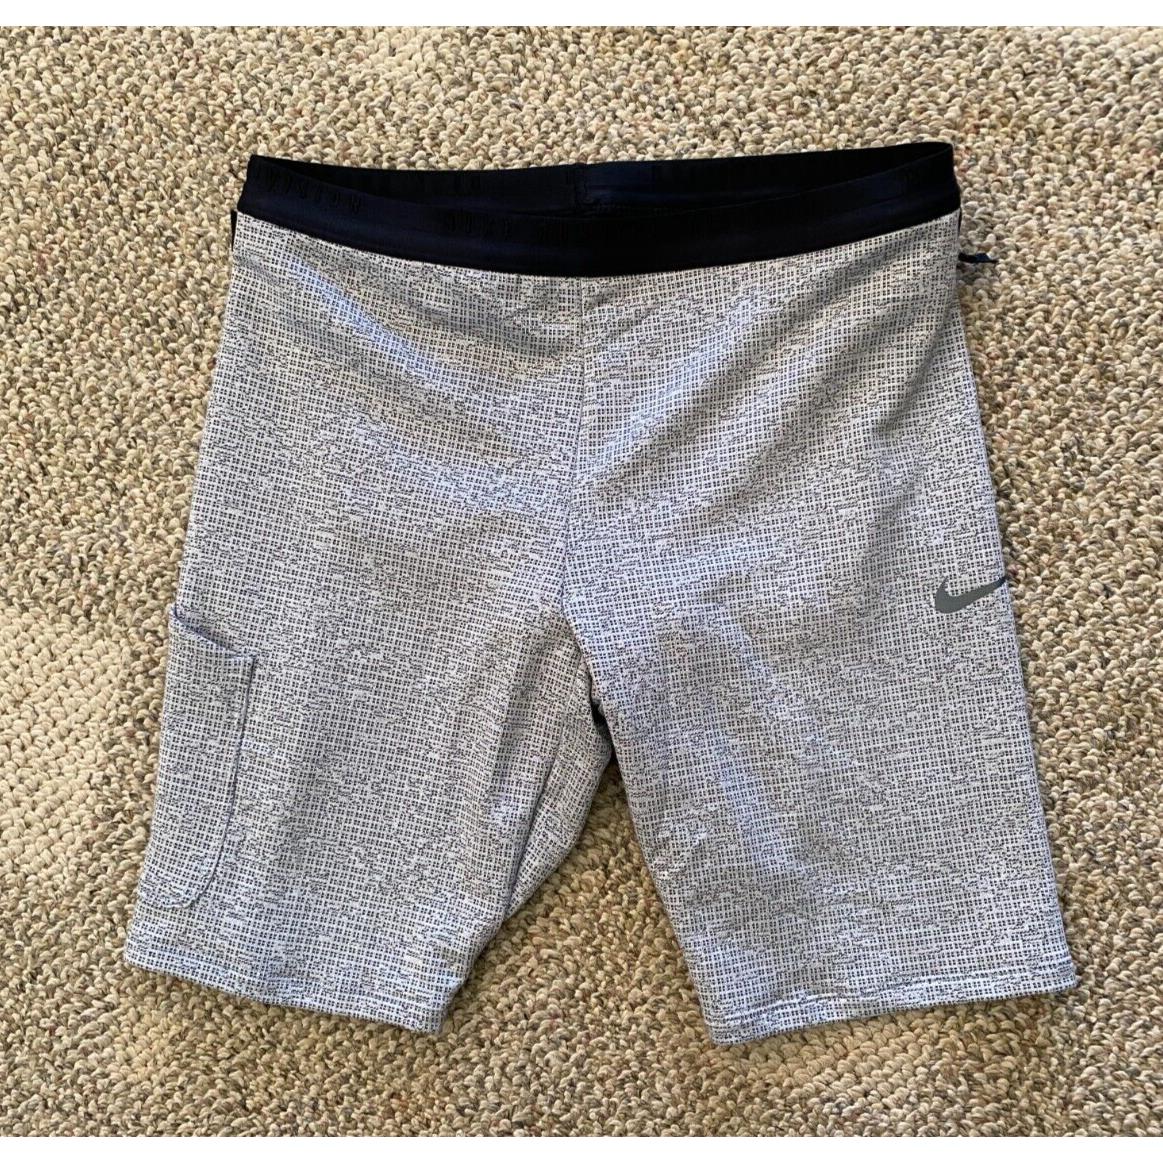 Nike Mens Running Division Lined Running Shorts Gray Size Medium DM4632-010